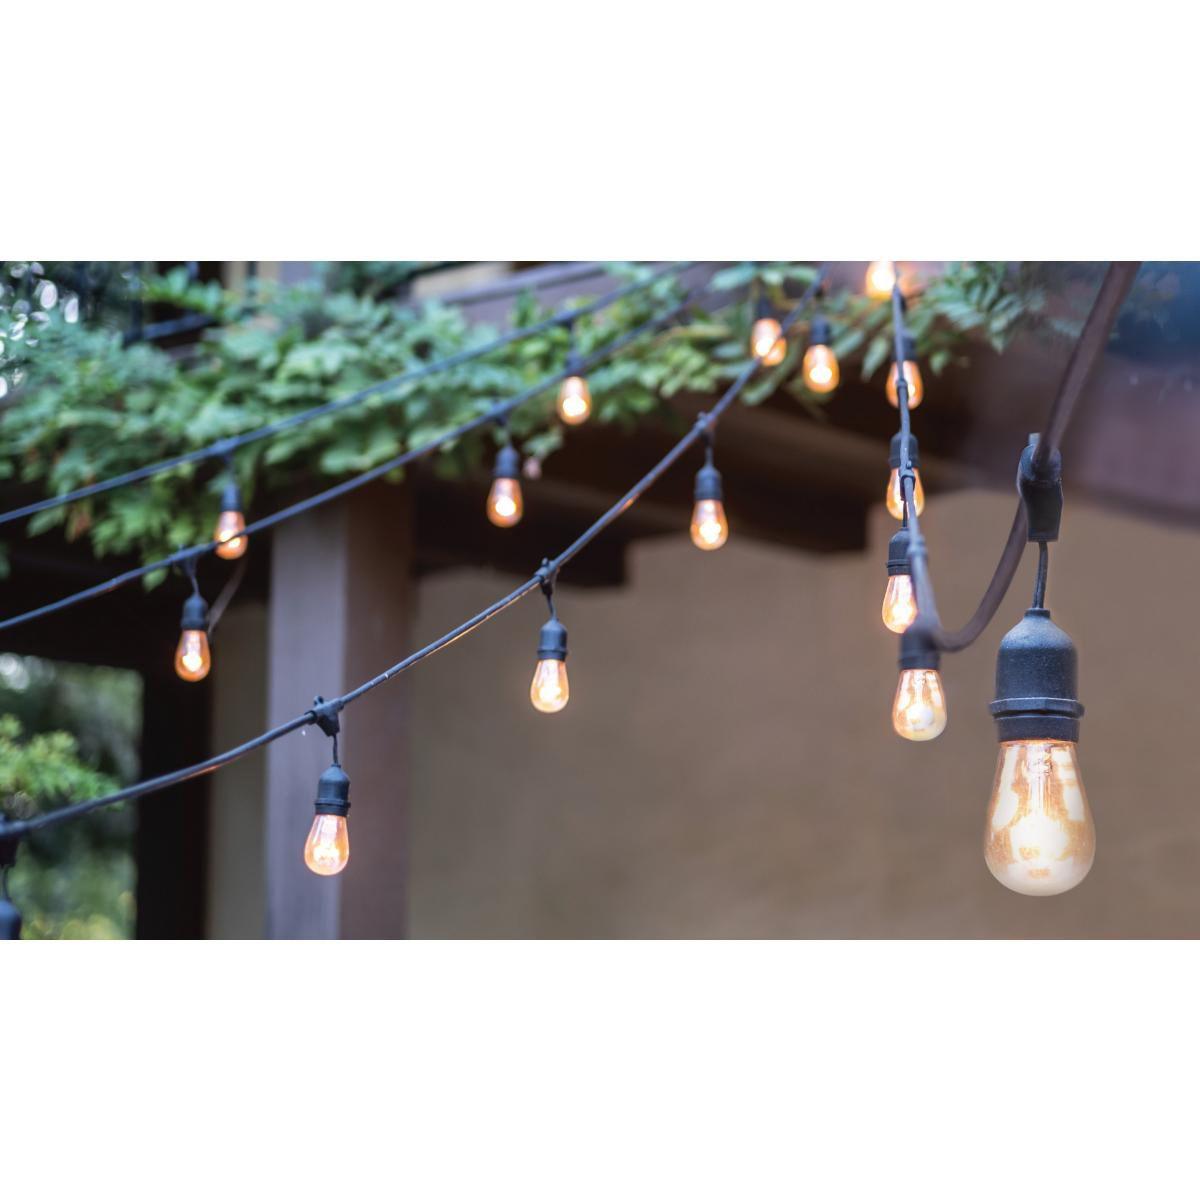 Outdoor LED String Light, 24 Feet, 12 LED filament bulbs, 2700K Warm white